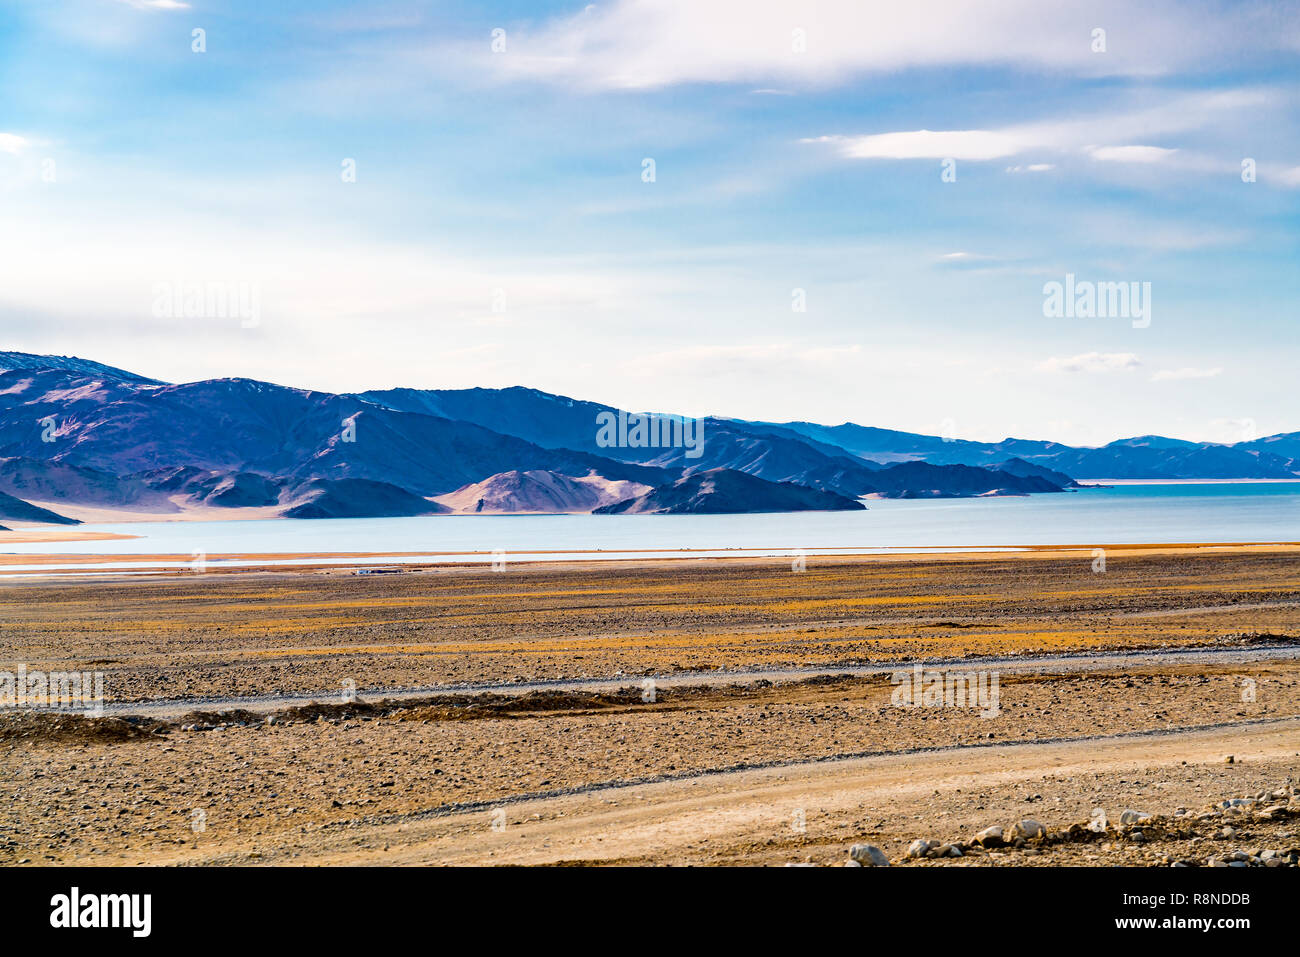 Vista della steppa di grandi dimensioni con gli animali della fattoria vicino al lago di fronte all'alta montagna a Ulgii in Mongolia occidentale Foto Stock